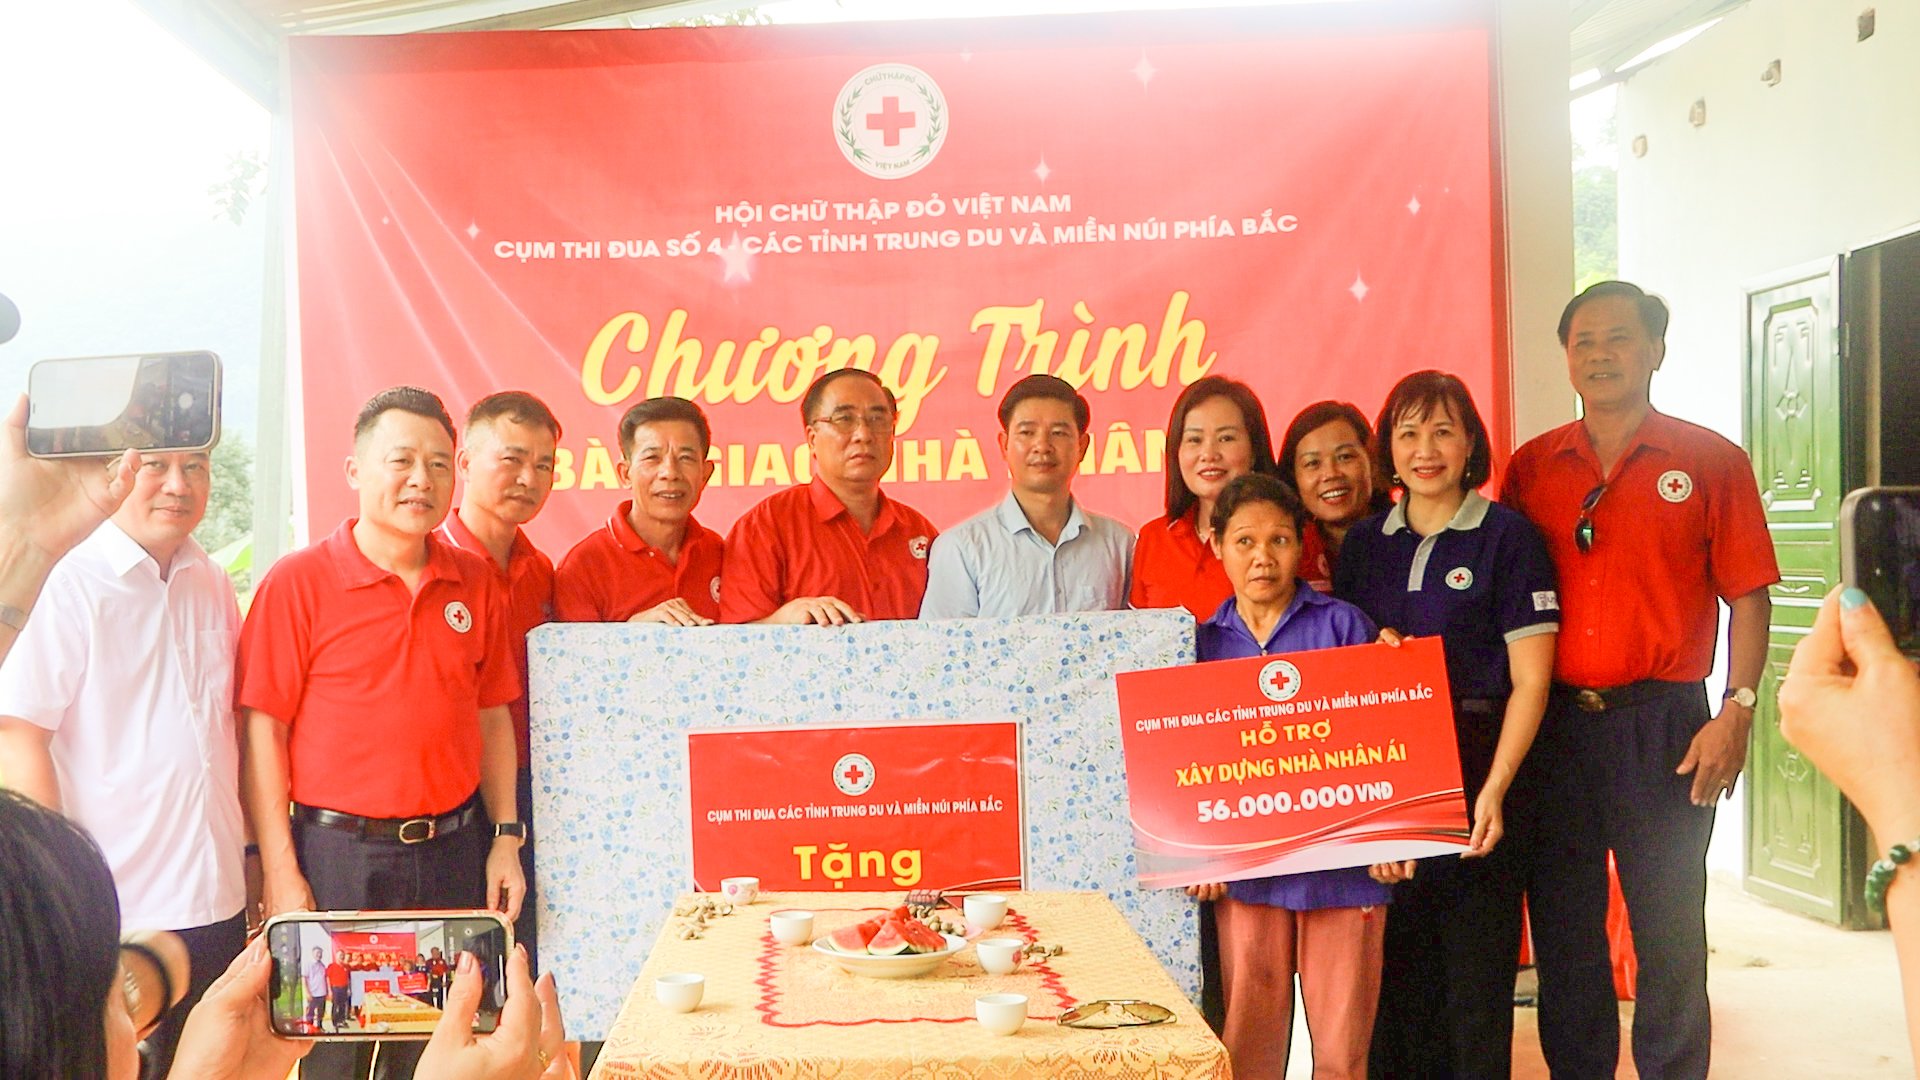 Cụm thi đua số 4 Hội Chữ thập đỏ các tỉnh Trung du và miền núi phía Bắc trao tặng quà, hỗ trợ sinh kế, trao nhà nhân đạo cho các gia đình có hoàn cảnh khó khăn tại Ba Bể